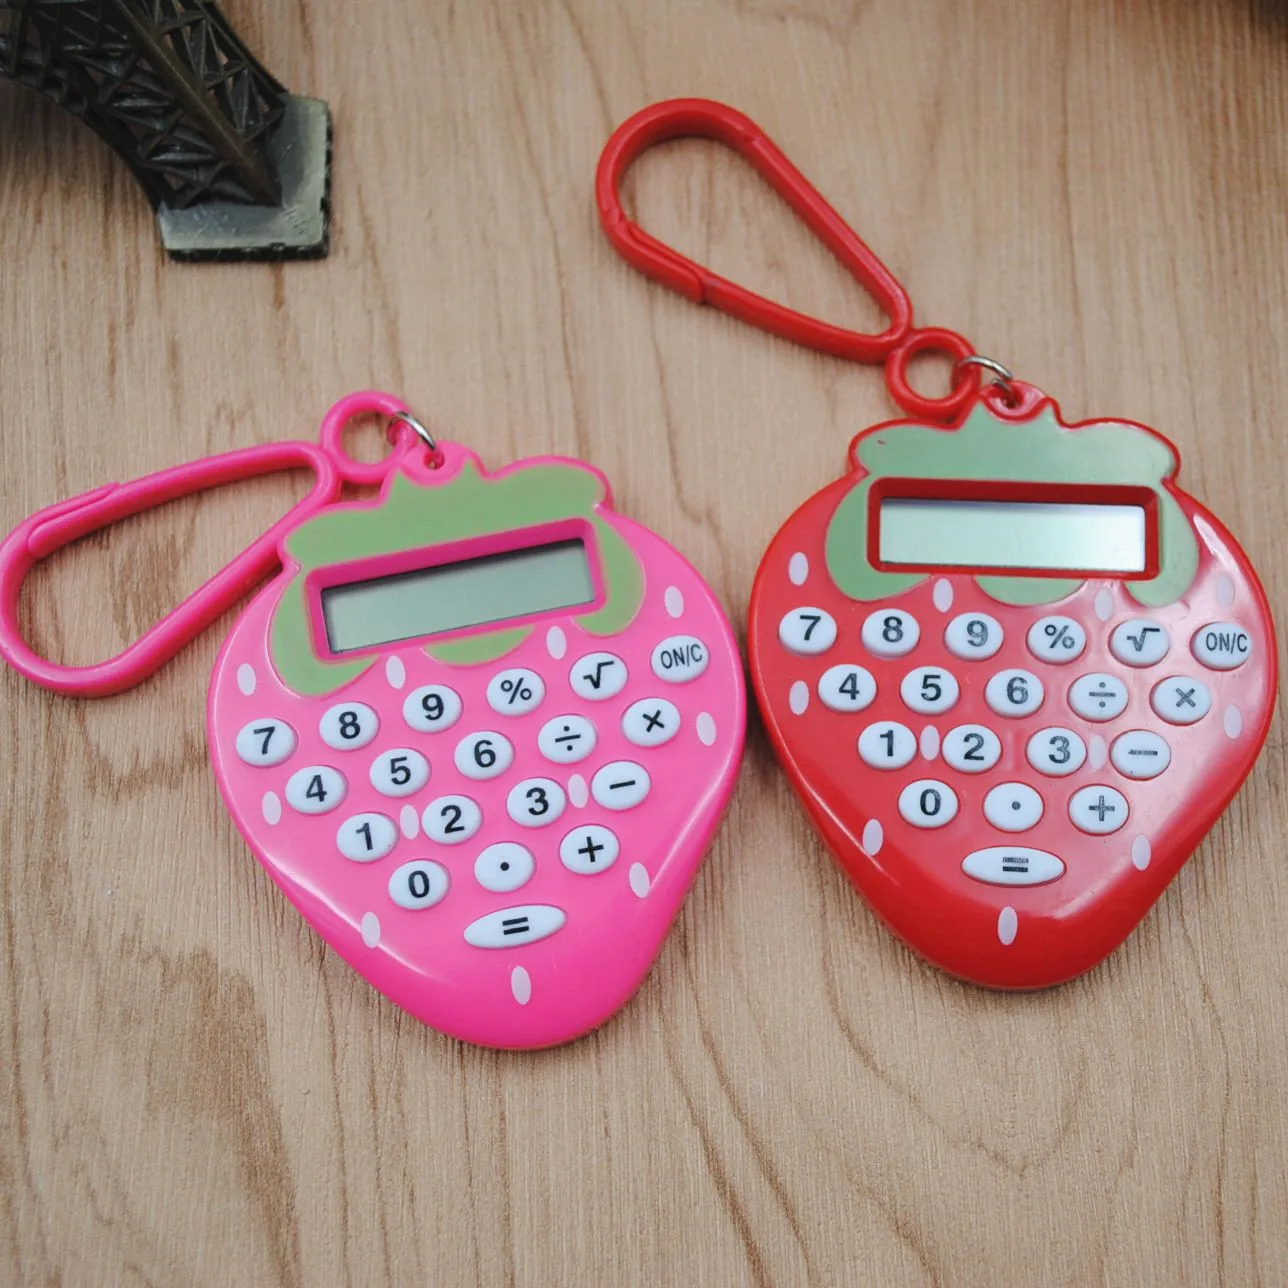 1 шт., калькулятор в форме клубники, мини-калькулятор для студентов, электронный калькулятор, карамельный цвет, калькулятор, офисные принадлежности, подарок, супер маленький